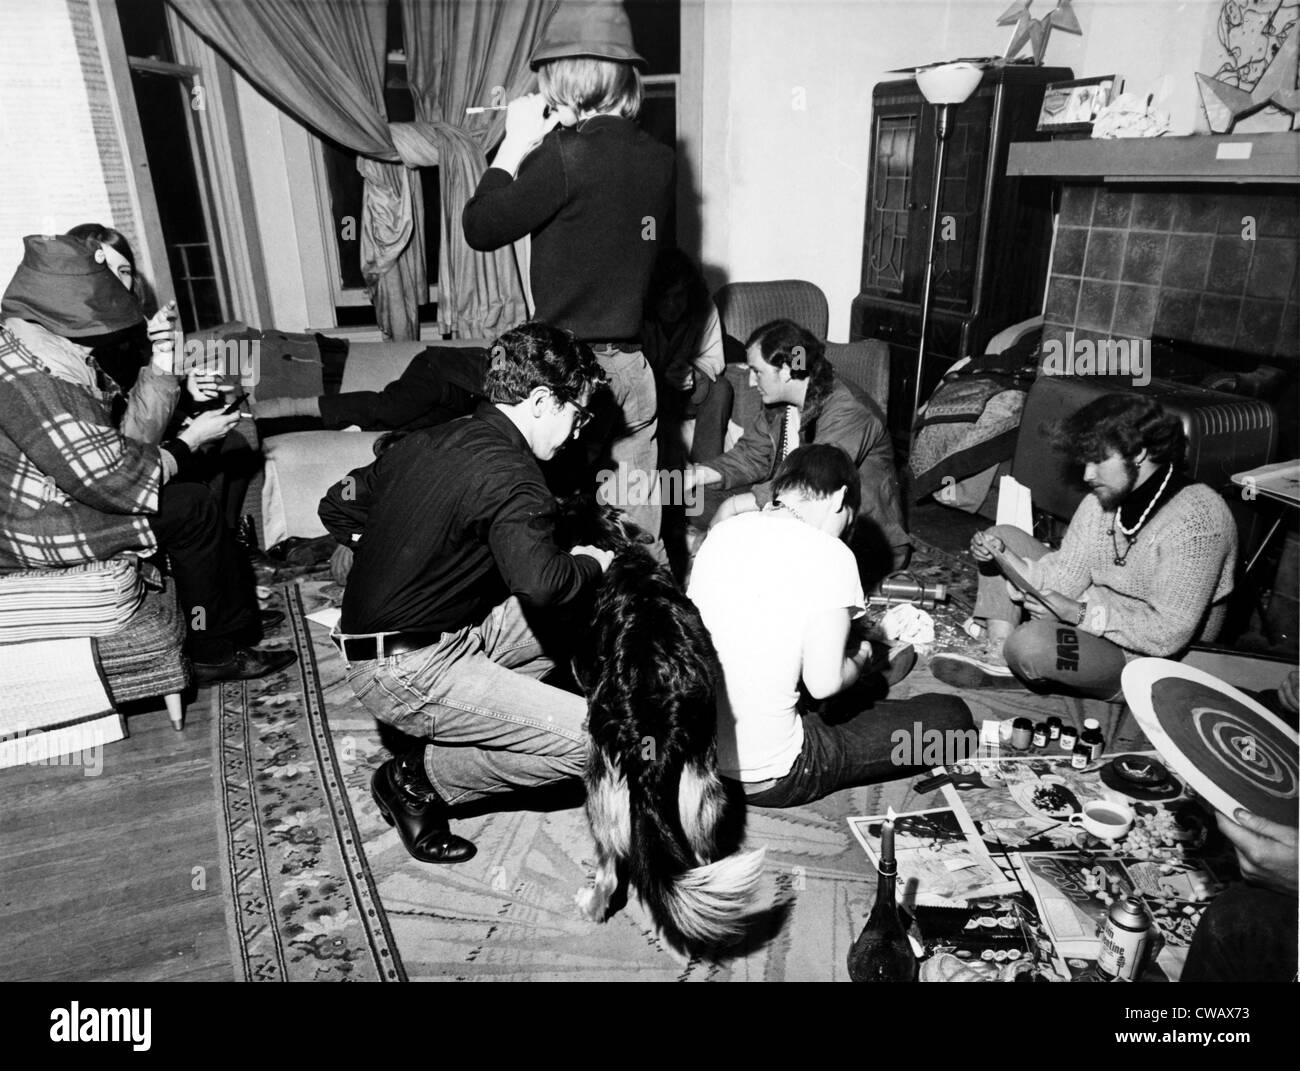 San Francisco, Californie, les hippies de traîner dans un appartement, 3/17/1967. Avec la permission de la CSU : Archives / Everett Collection Banque D'Images